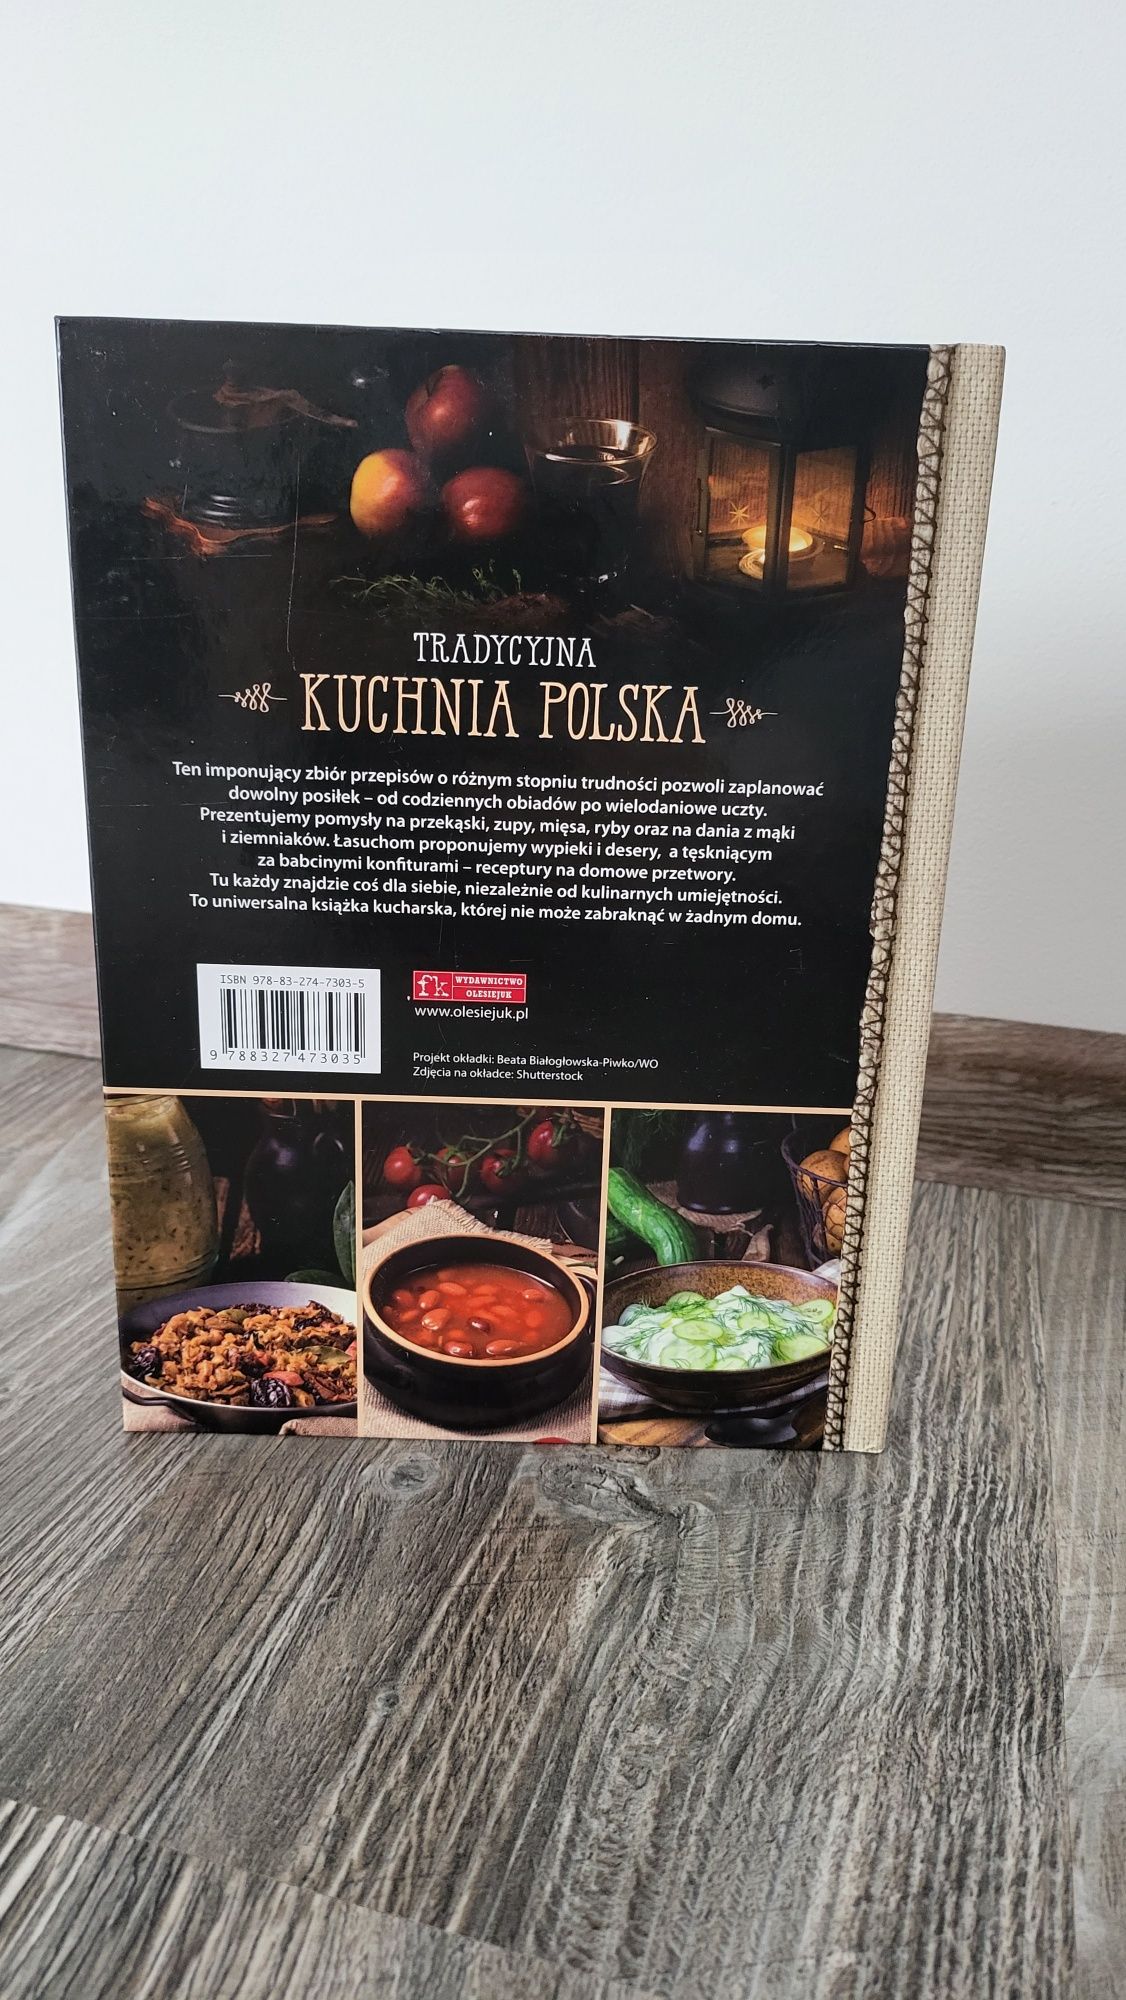 Kuchnia polska, Tradycyjna kuchnia polska